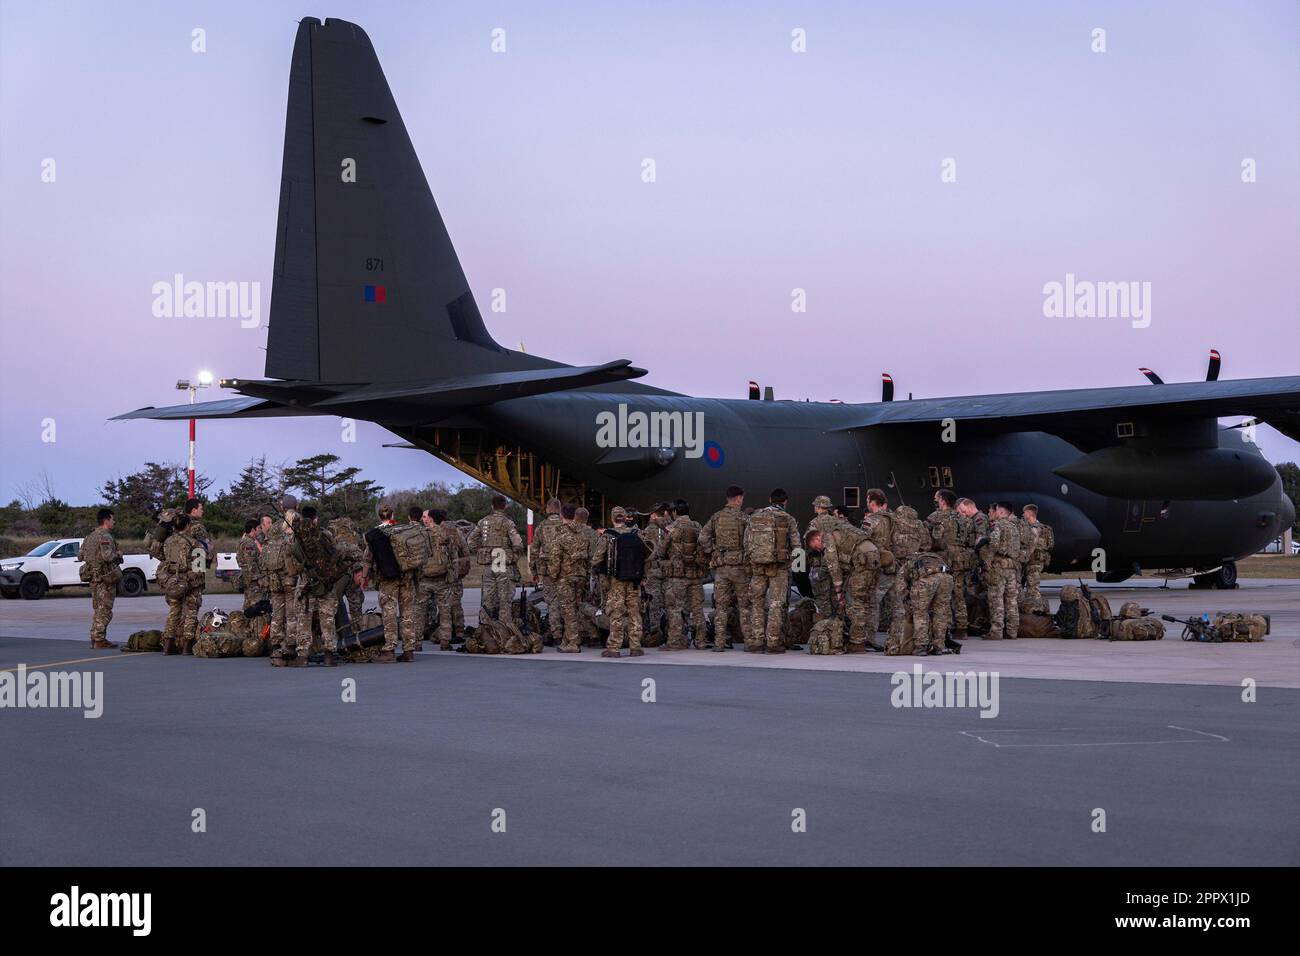 Aushändigung des Fotos des Personals der 40. Kommandobrigade und der Joint-Force-Hauptquartiere, die zur Unterstützung der FCDO-nichtkombattantischen Evakuierungsoperation zur Entfernung von Personal aus dem Sudan nach Zypern entsandt wurden. Erhält frühmorgens Briefe, bereitet die RAF Akrotiri vor und verlässt sie mit dem Flugzeug C-130 Hercules. Rund 1.400 Angehörige der Streitkräfte sind an der großangelegten Evakuierung britischer Staatsangehöriger beteiligt, nachdem eine dreitägige Waffenruhe vereinbart wurde. Ausgabedatum: Dienstag, 25. April 2023. Stockfoto